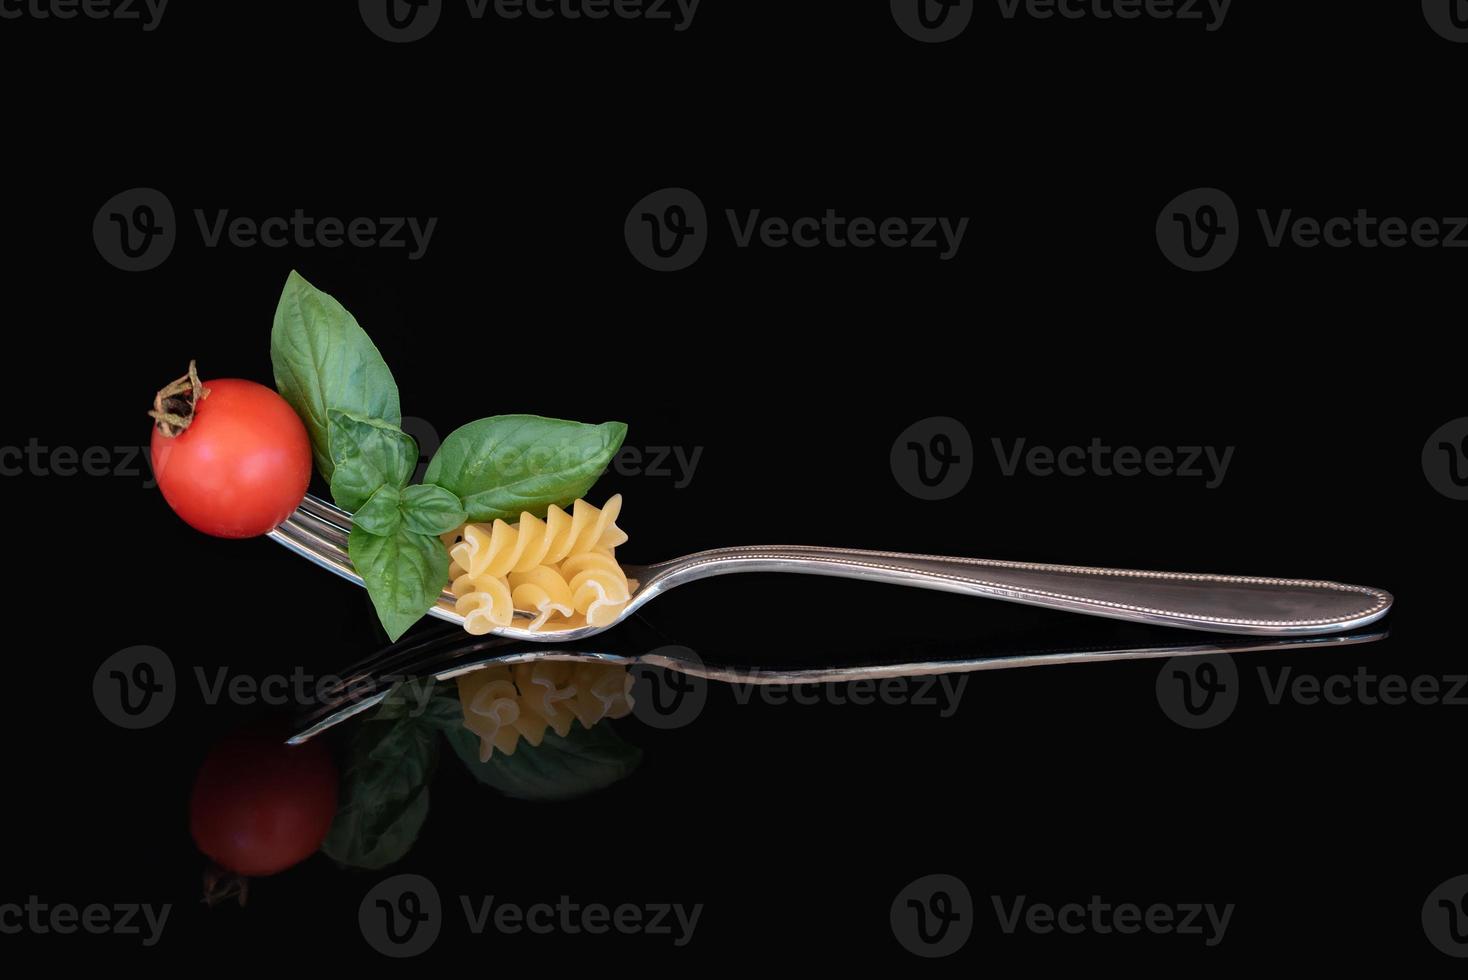 en stor metall gaffel med pasta, basilika och en tomat på Det. de bestick är reflekterad mot en mörk bakgrund. foto